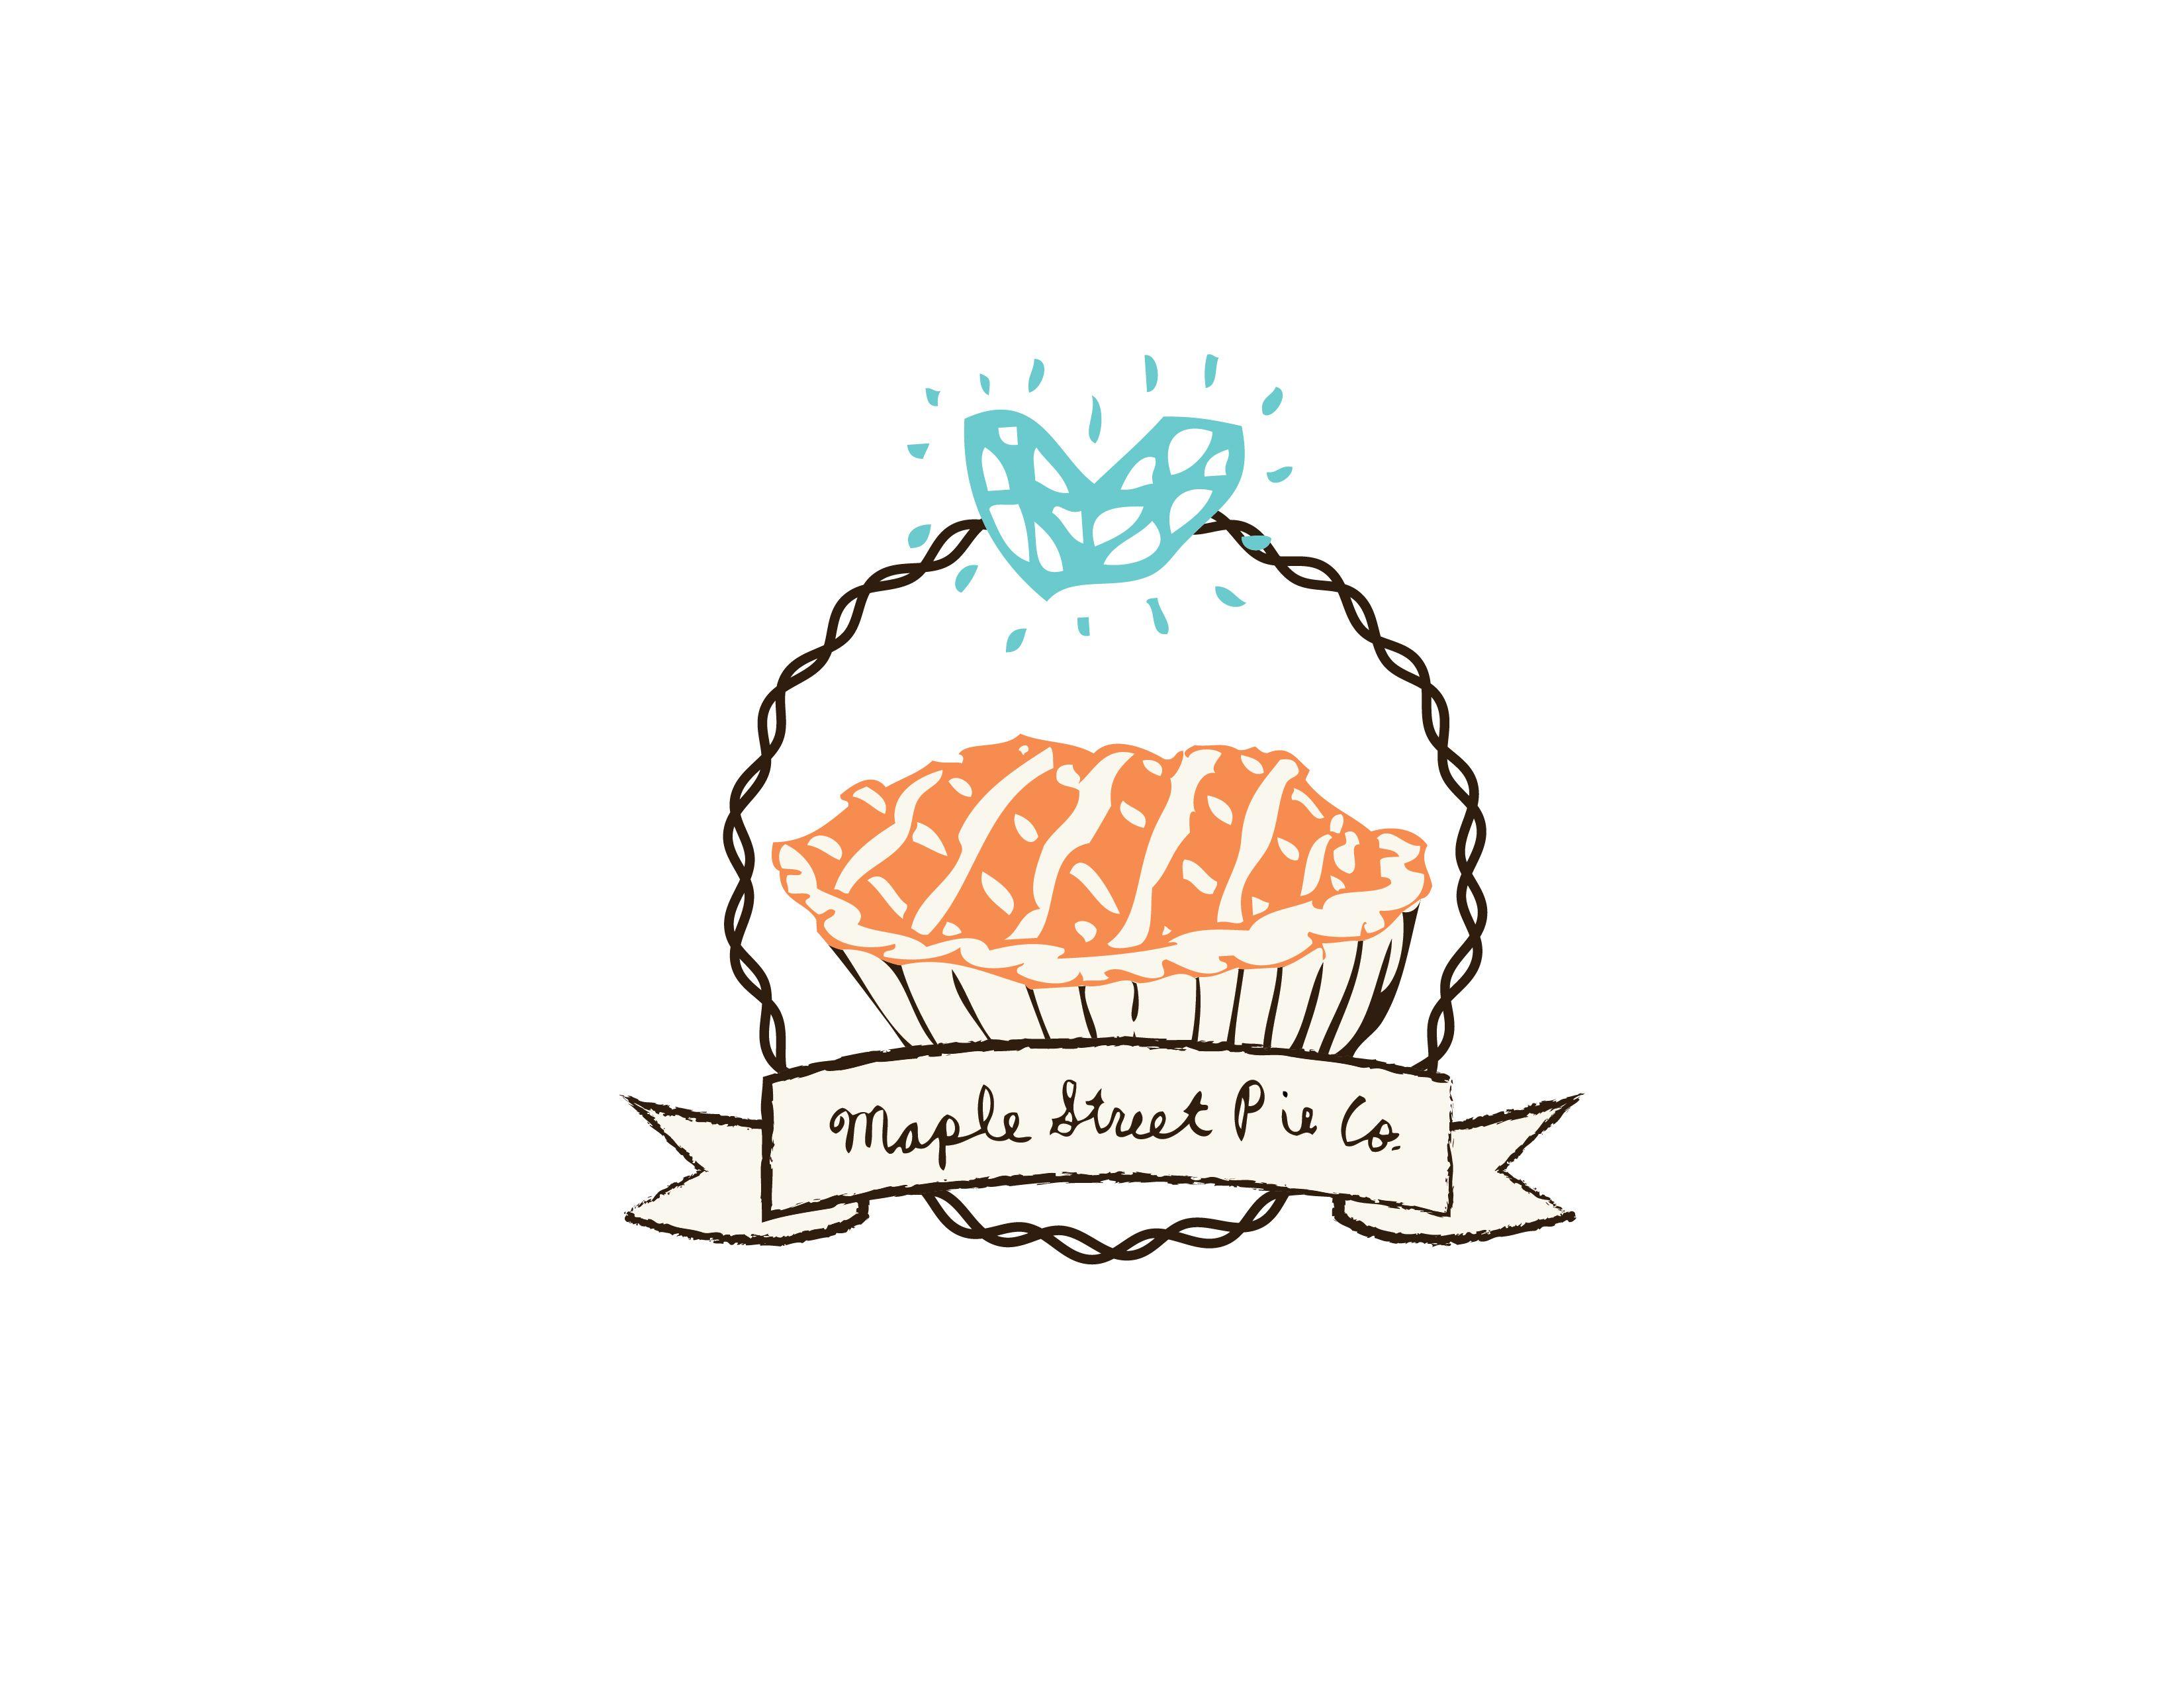 Pie Company Logo - Brand Development. Maple Street Pie Co